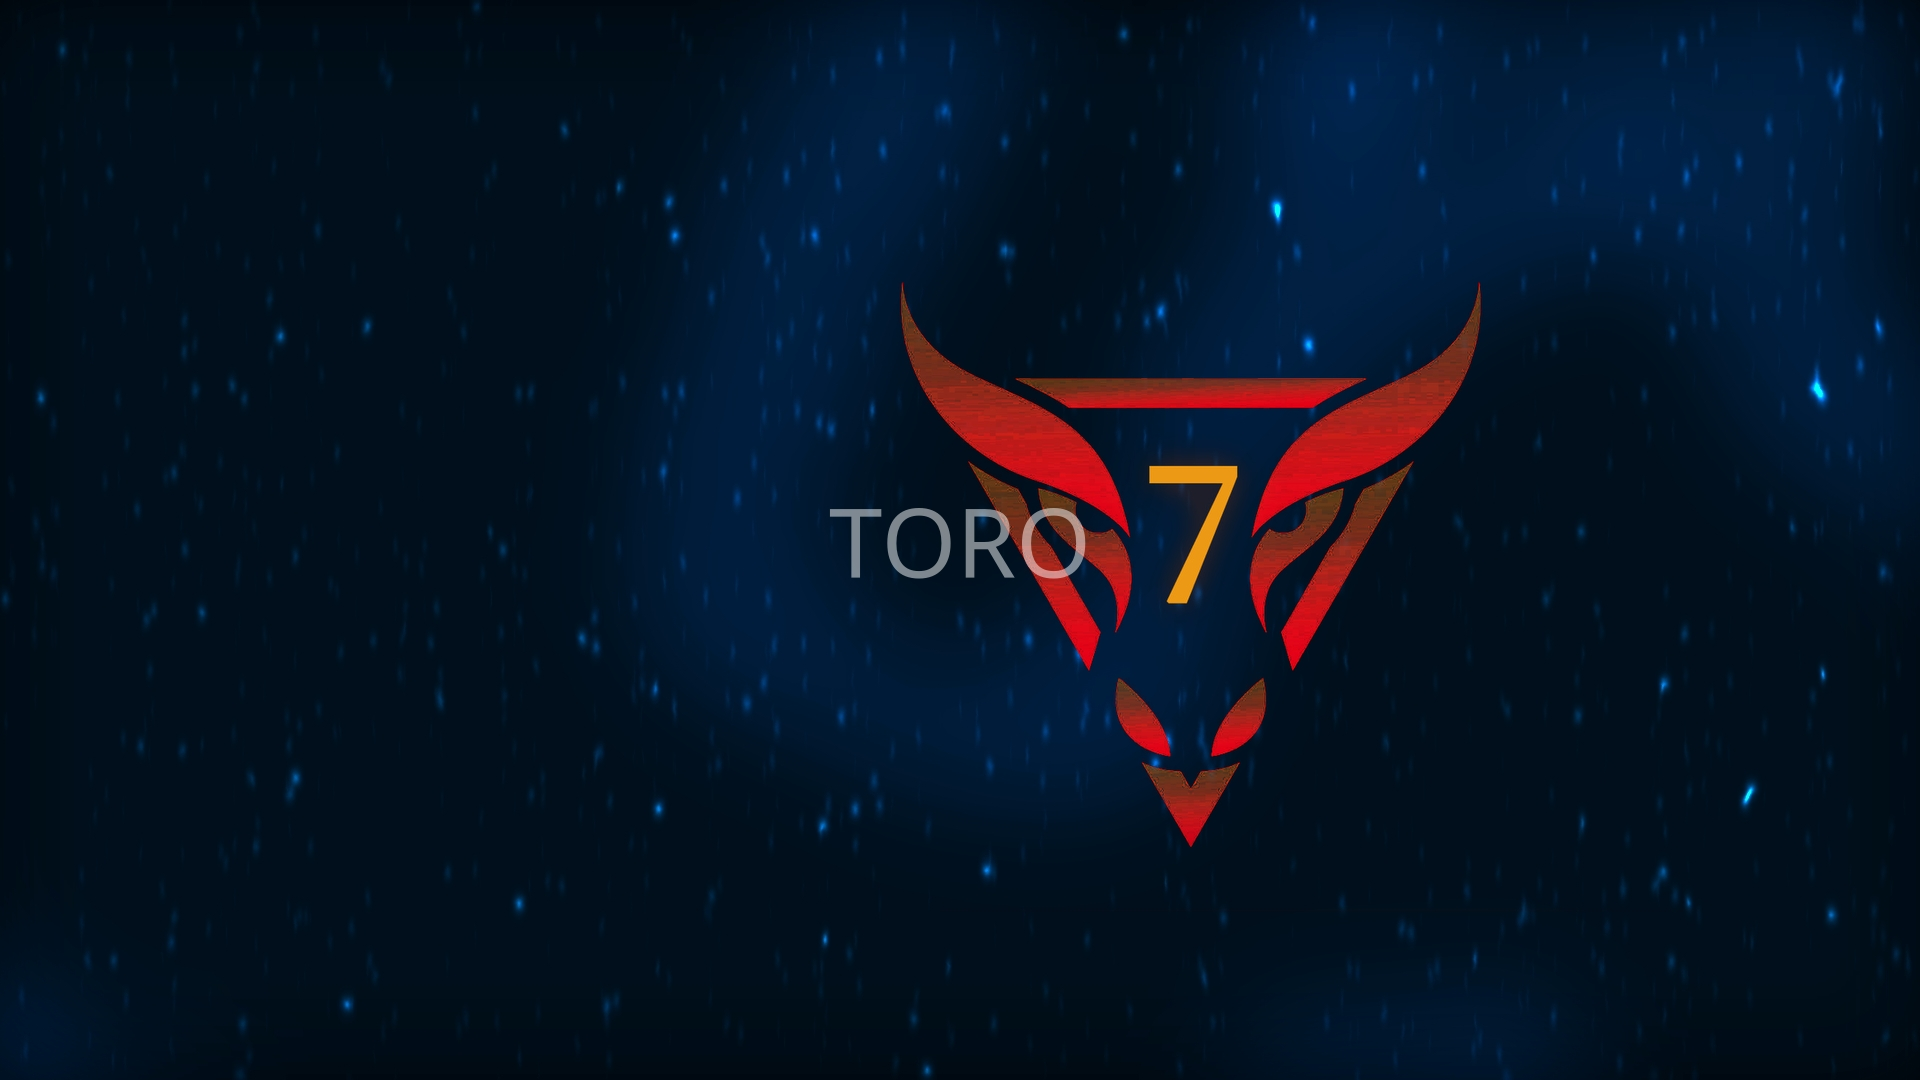 Toro 7 main image